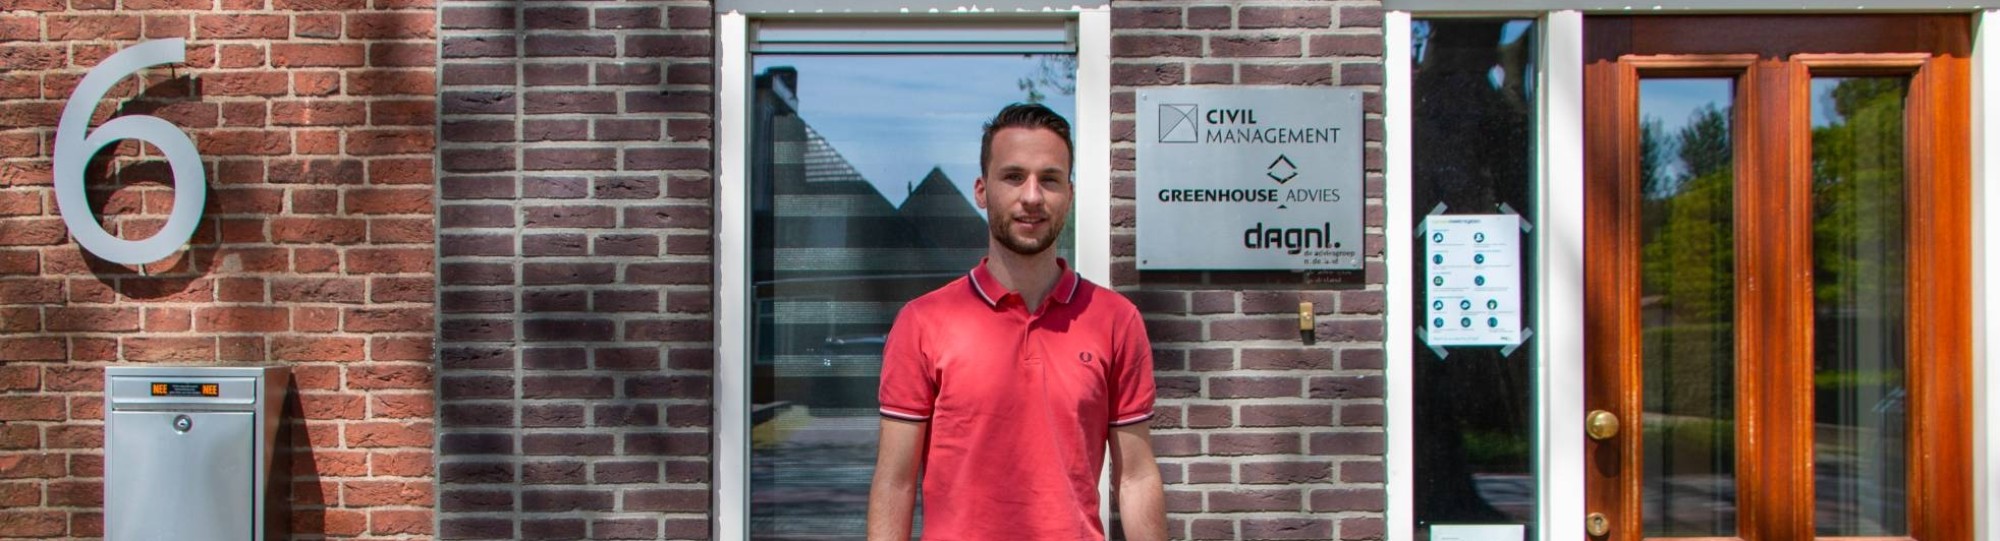 Civiele techniek, Stijn Wijers voor het pand van Civil Management, Greenhouse Advies en DagNL.